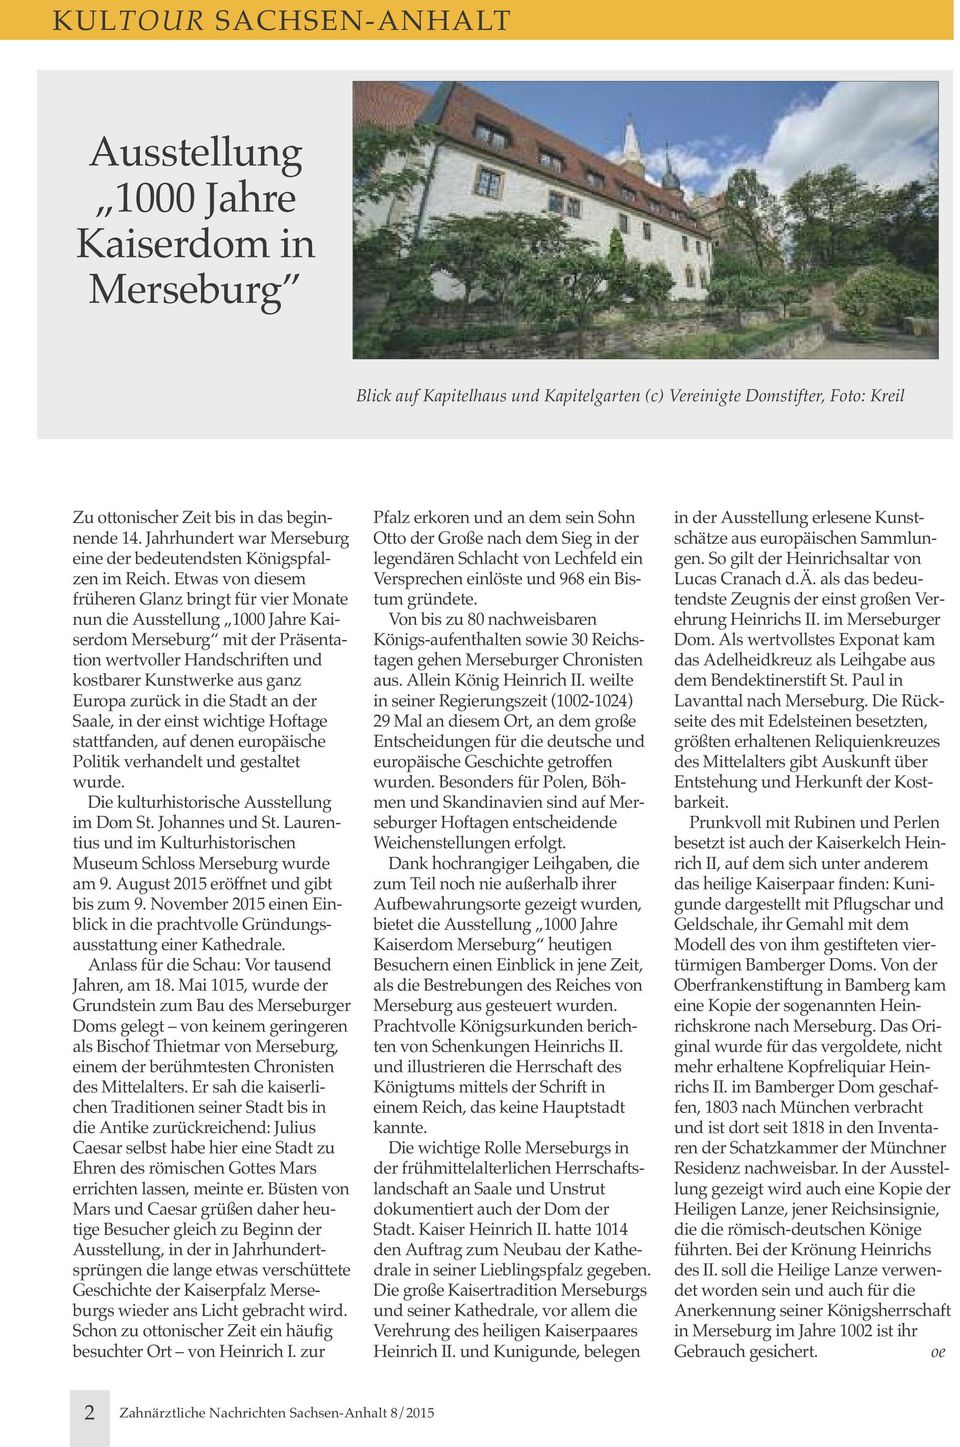 etwas von diesem früheren Glanz bringt für vier Monate nun die ausstellung 1000 Jahre Kaiserdom Merseburg mit der Präsentation wertvoller handschriften und kostbarer Kunstwerke aus ganz europa zurück